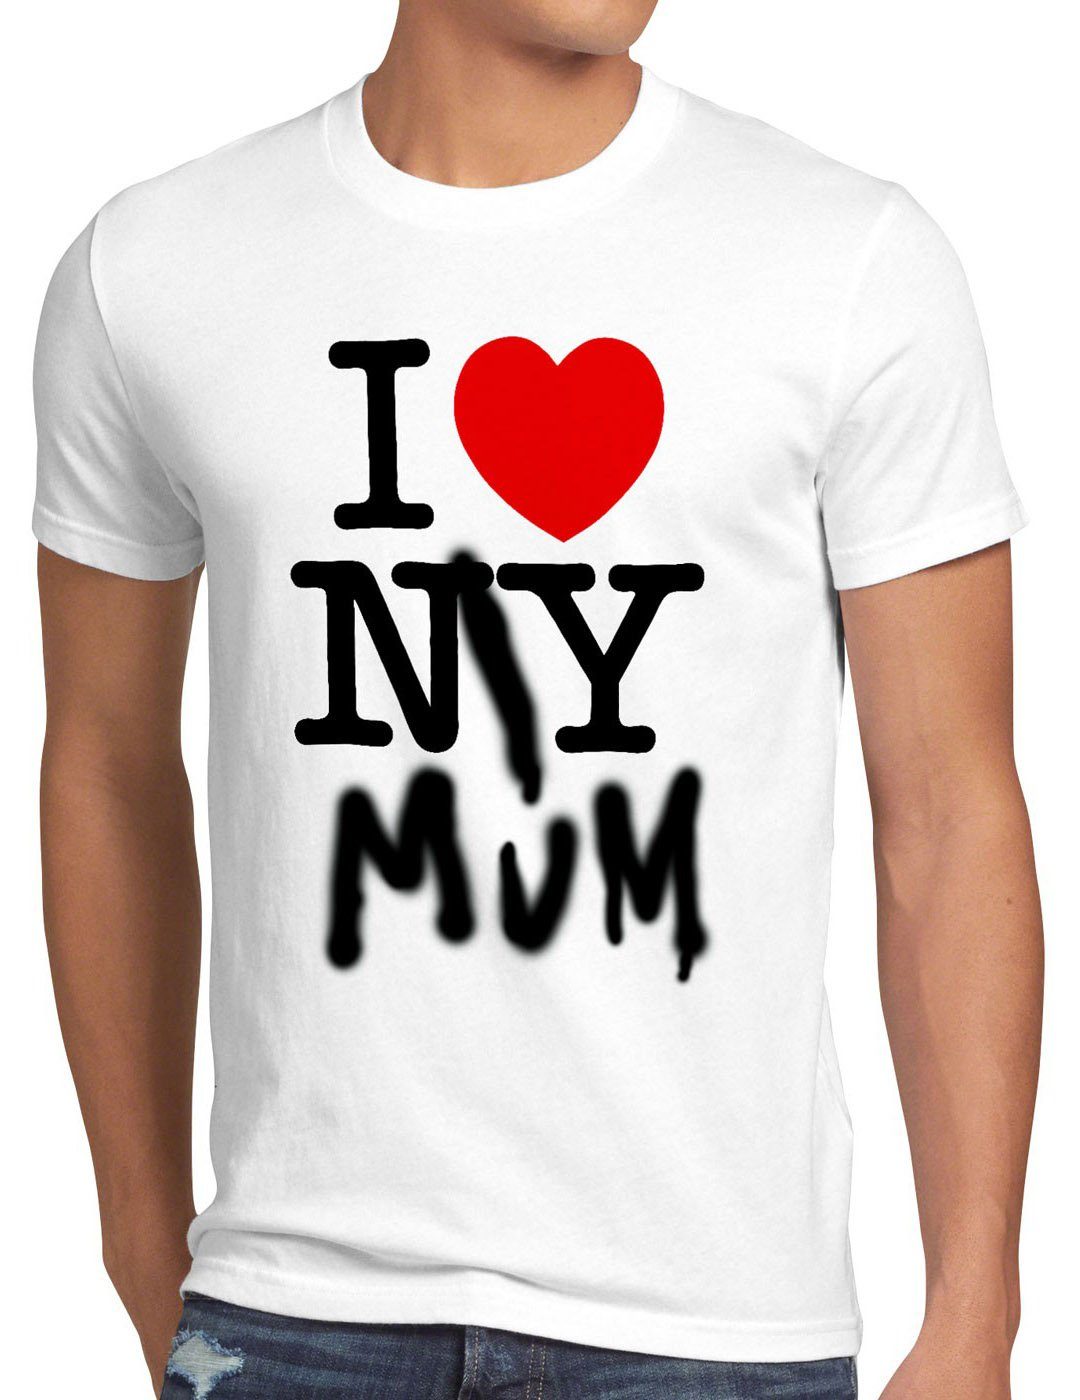 style3 Print-Shirt herz Mum weiß My usa ny I T-Shirt york Herren Love amerika new muttertag